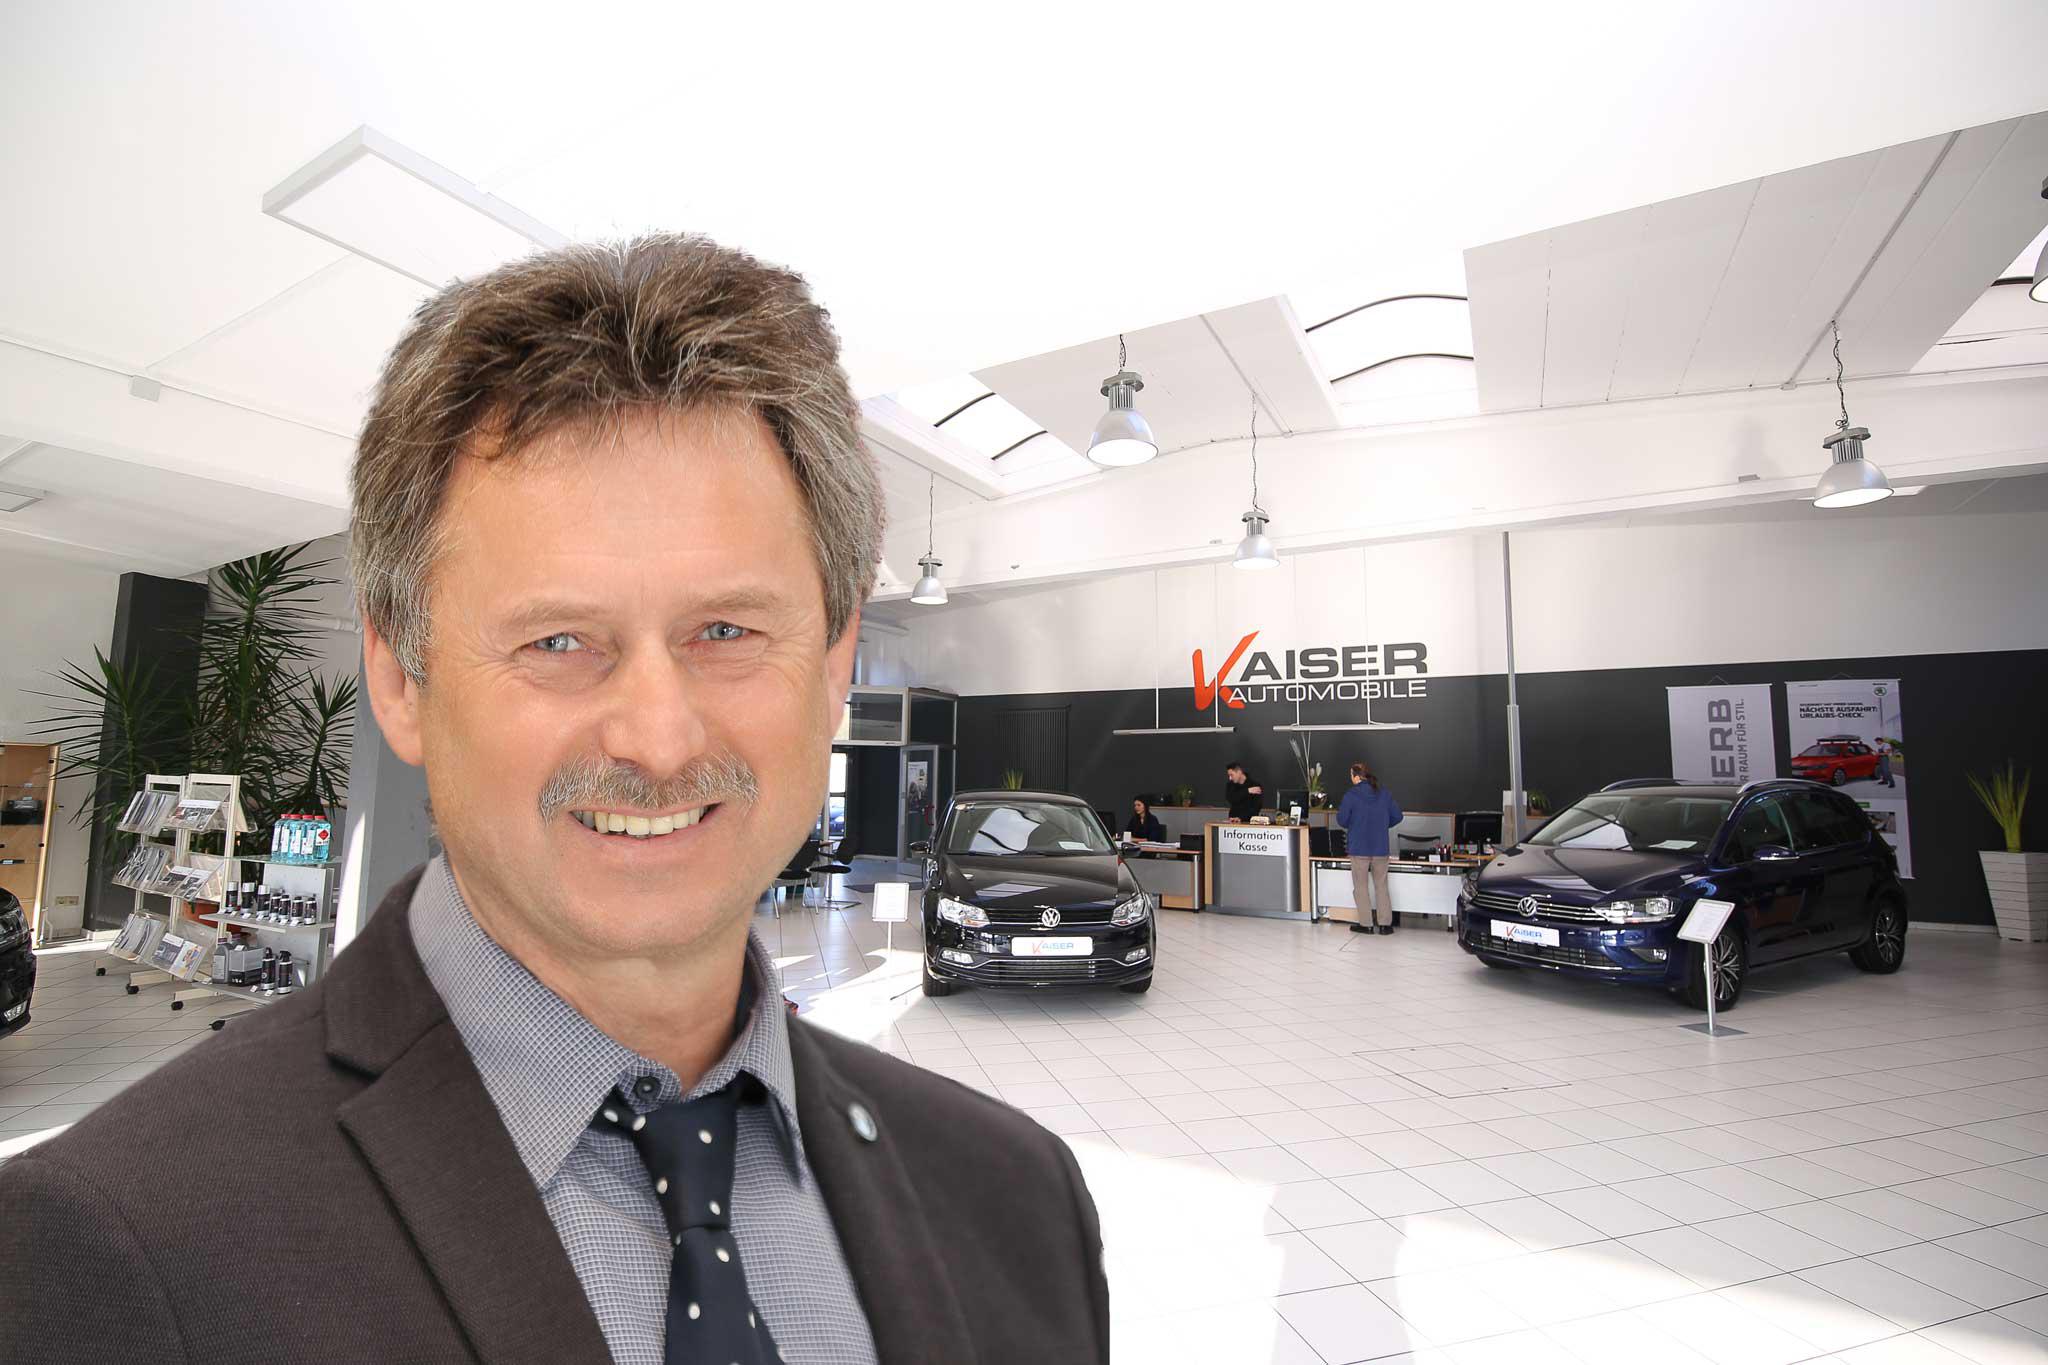 Bild der Automobile Kaiser GmbH